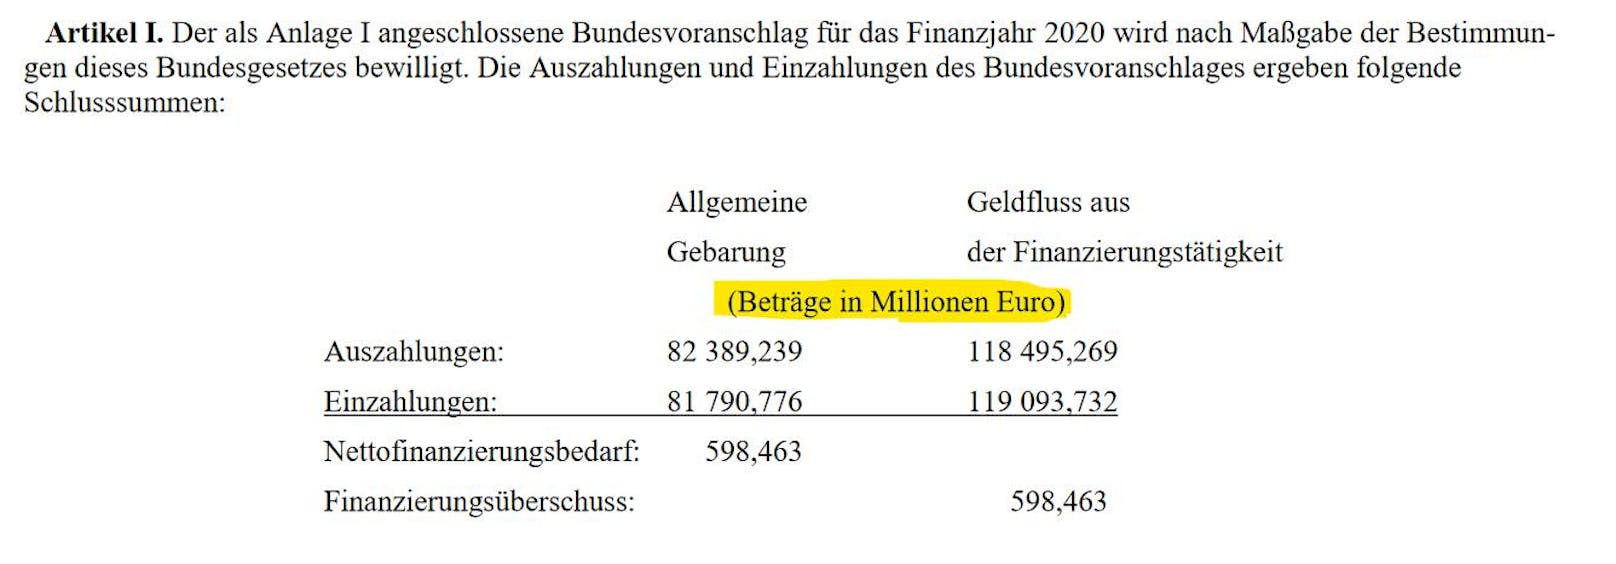 Es fehlt im Abänderungsantrag der Vermerk "Beiträge in Millionen Euro".